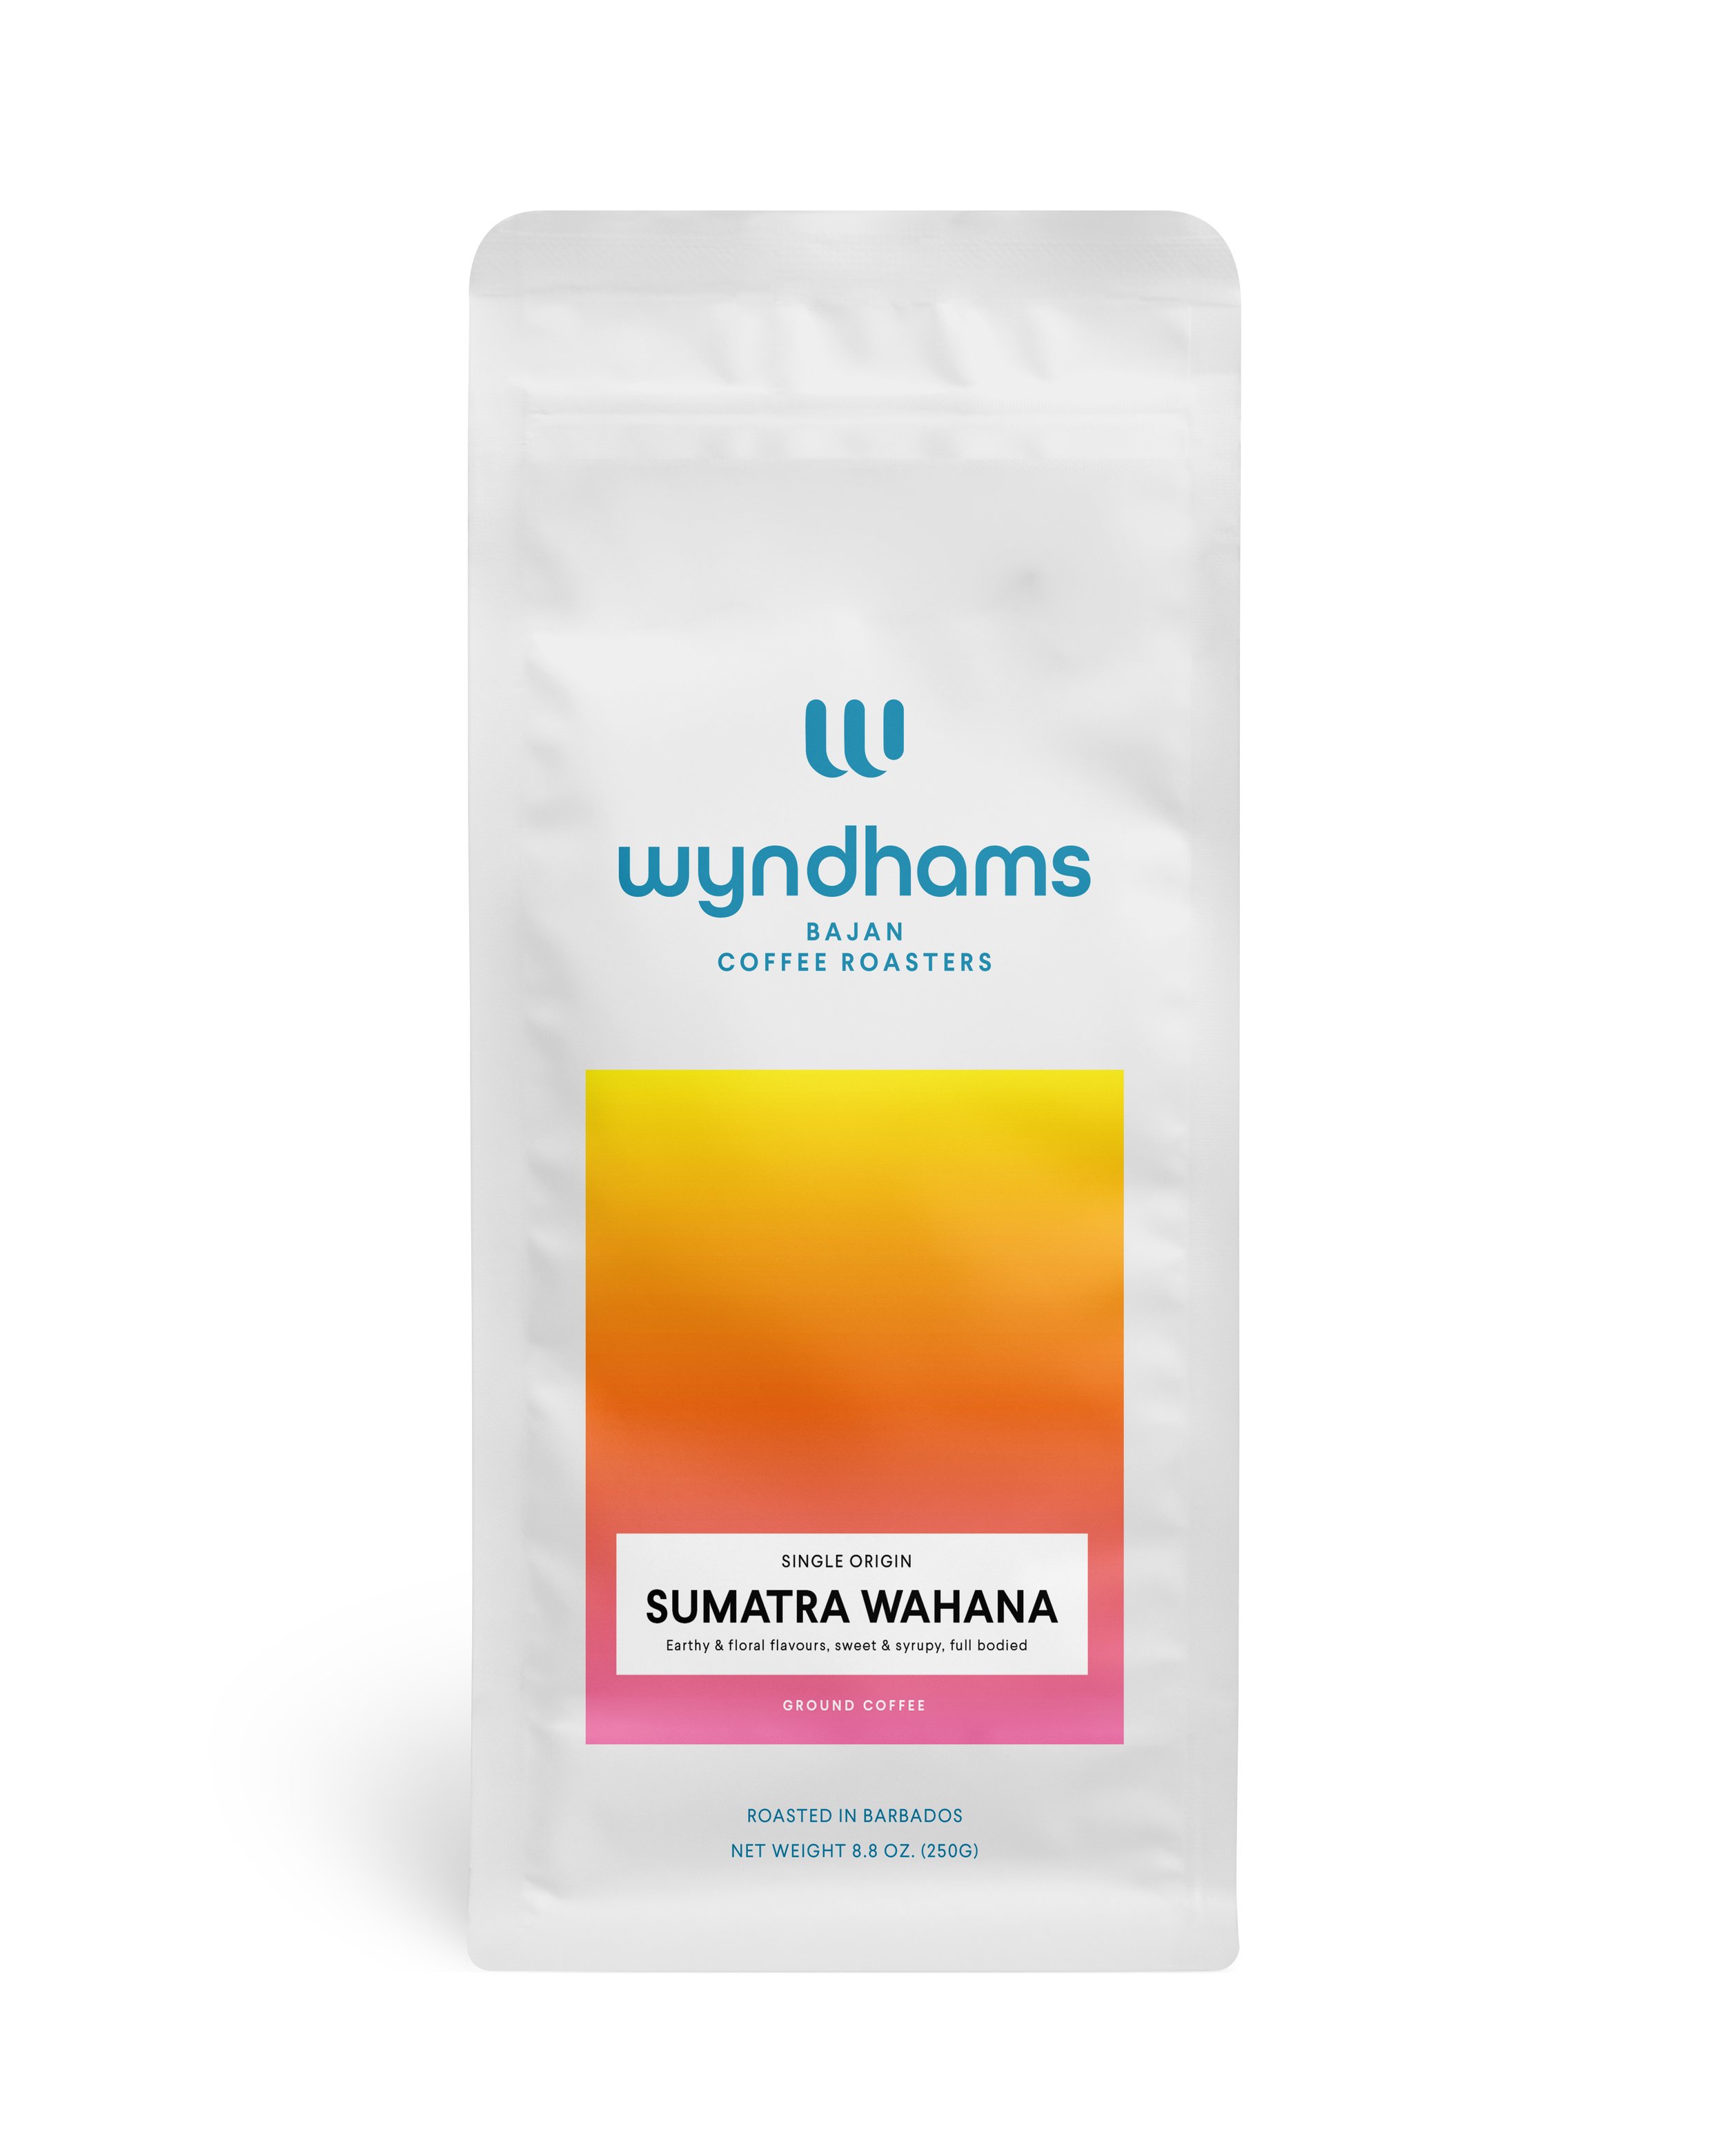 Wyndhams_250g_Bag_Sumatra-Wahana.jpg